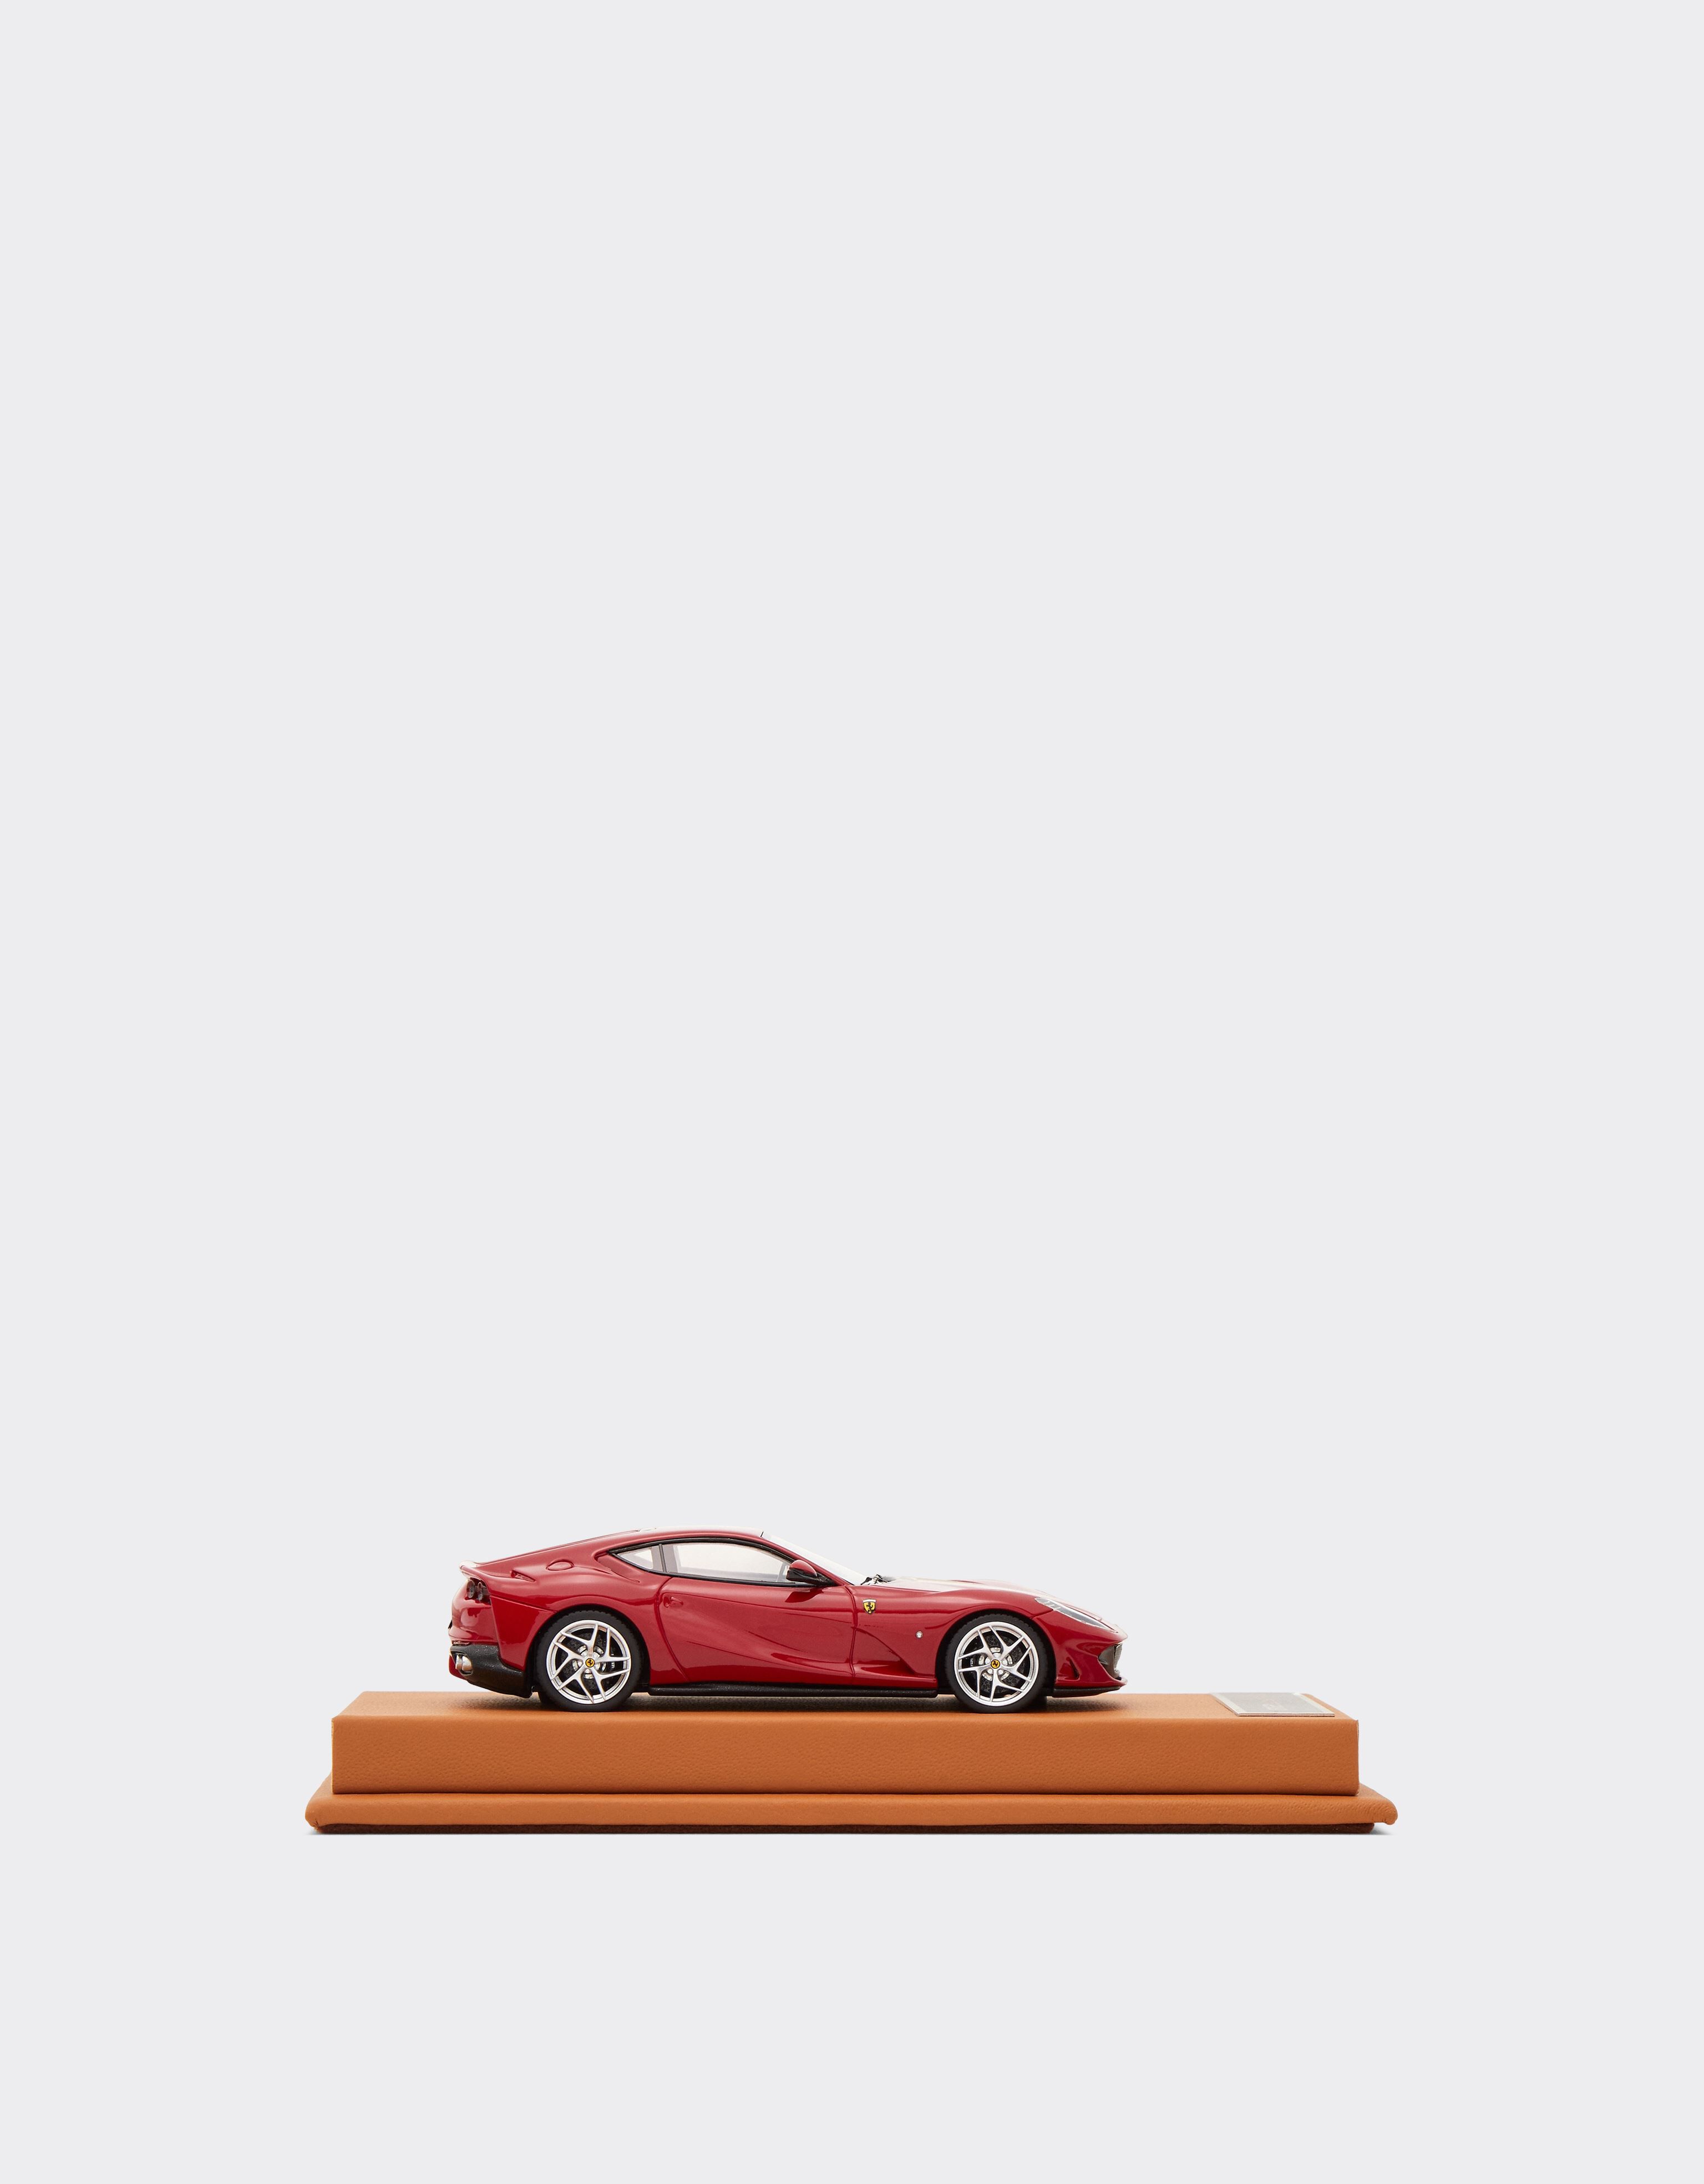 Ferrari Ferrari 812 Superfast 1:43 scale model Red 47298f